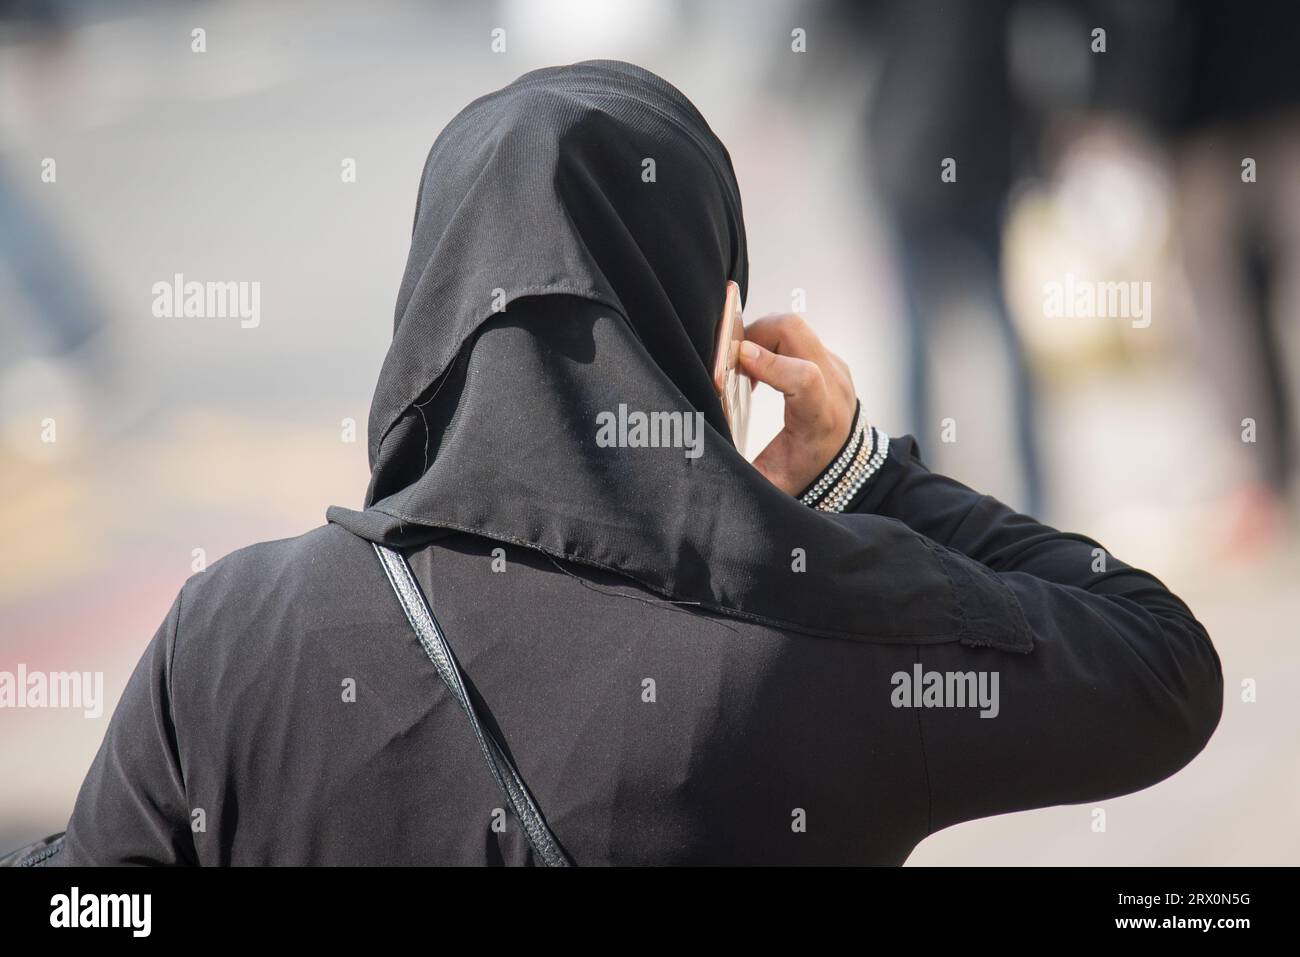 Aktenfoto vom 27/03/17 einer muslimischen Frau in London, da die Regierung eine stärkere Haltung einnehmen muss, um die Auferlegung von Kleiderordnungen für muslimische Frauen zu verhindern, sagte ein Think Tank. Stockfoto